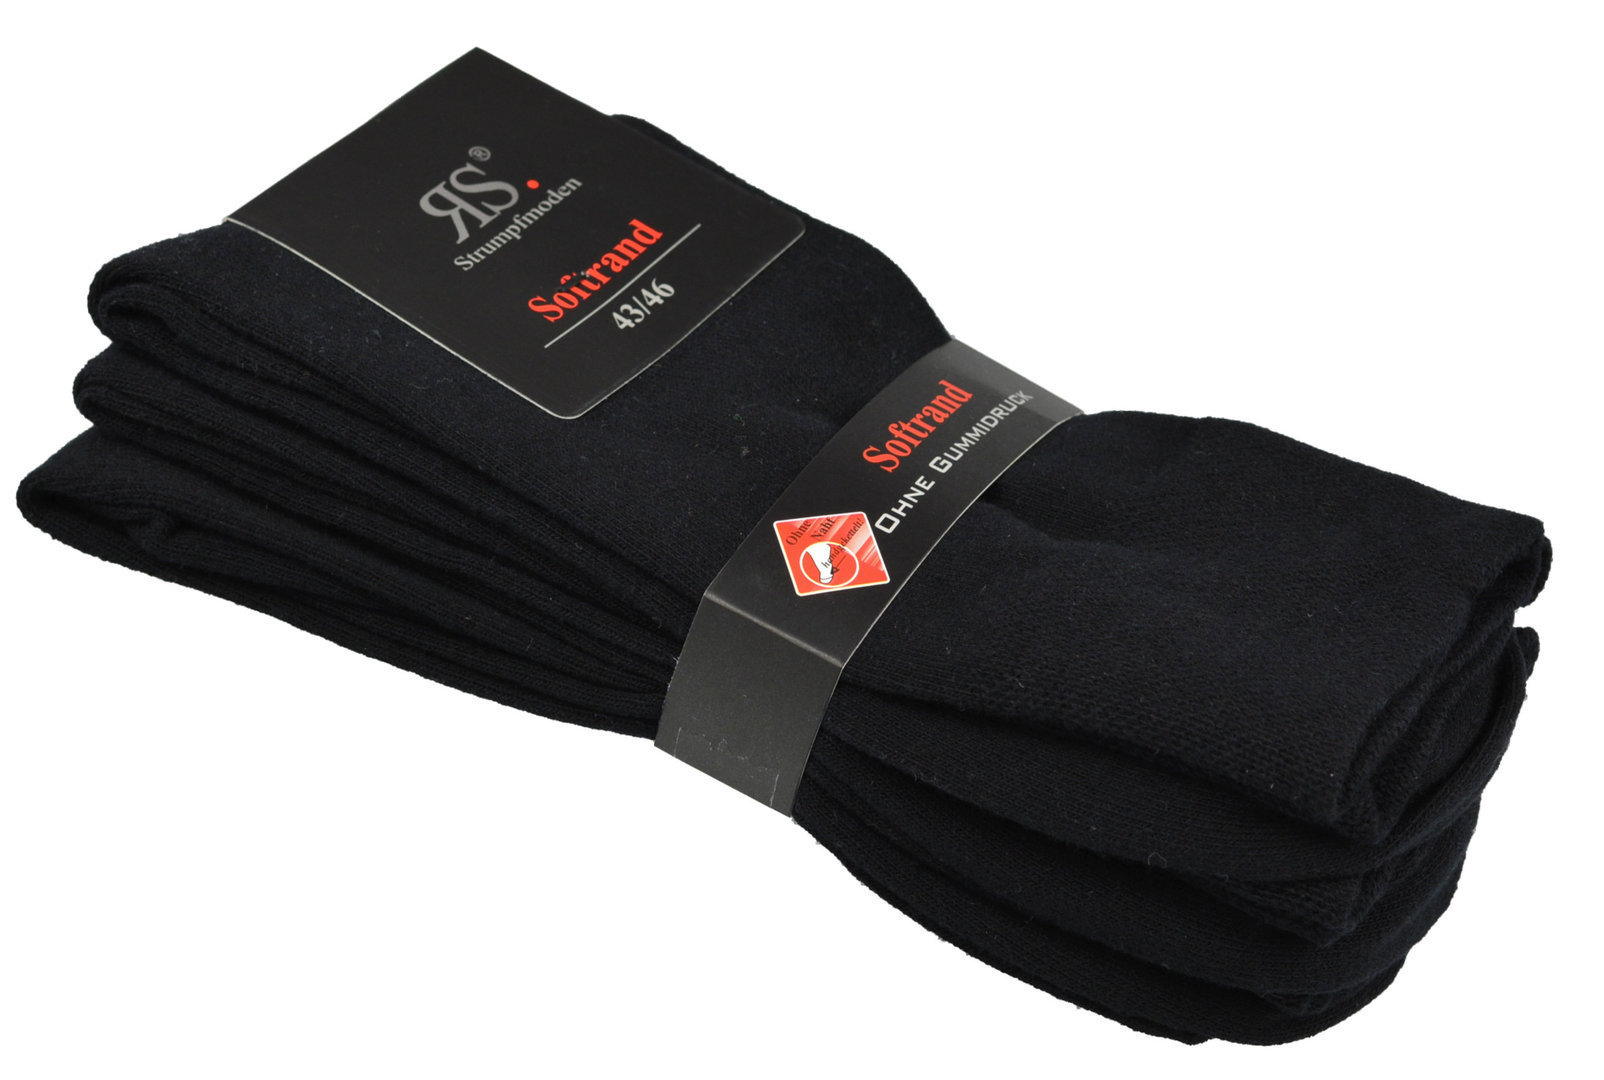 Art.: 331196  Harmony Business-Socke for Men - Premium Quality  ohne Gummidruck